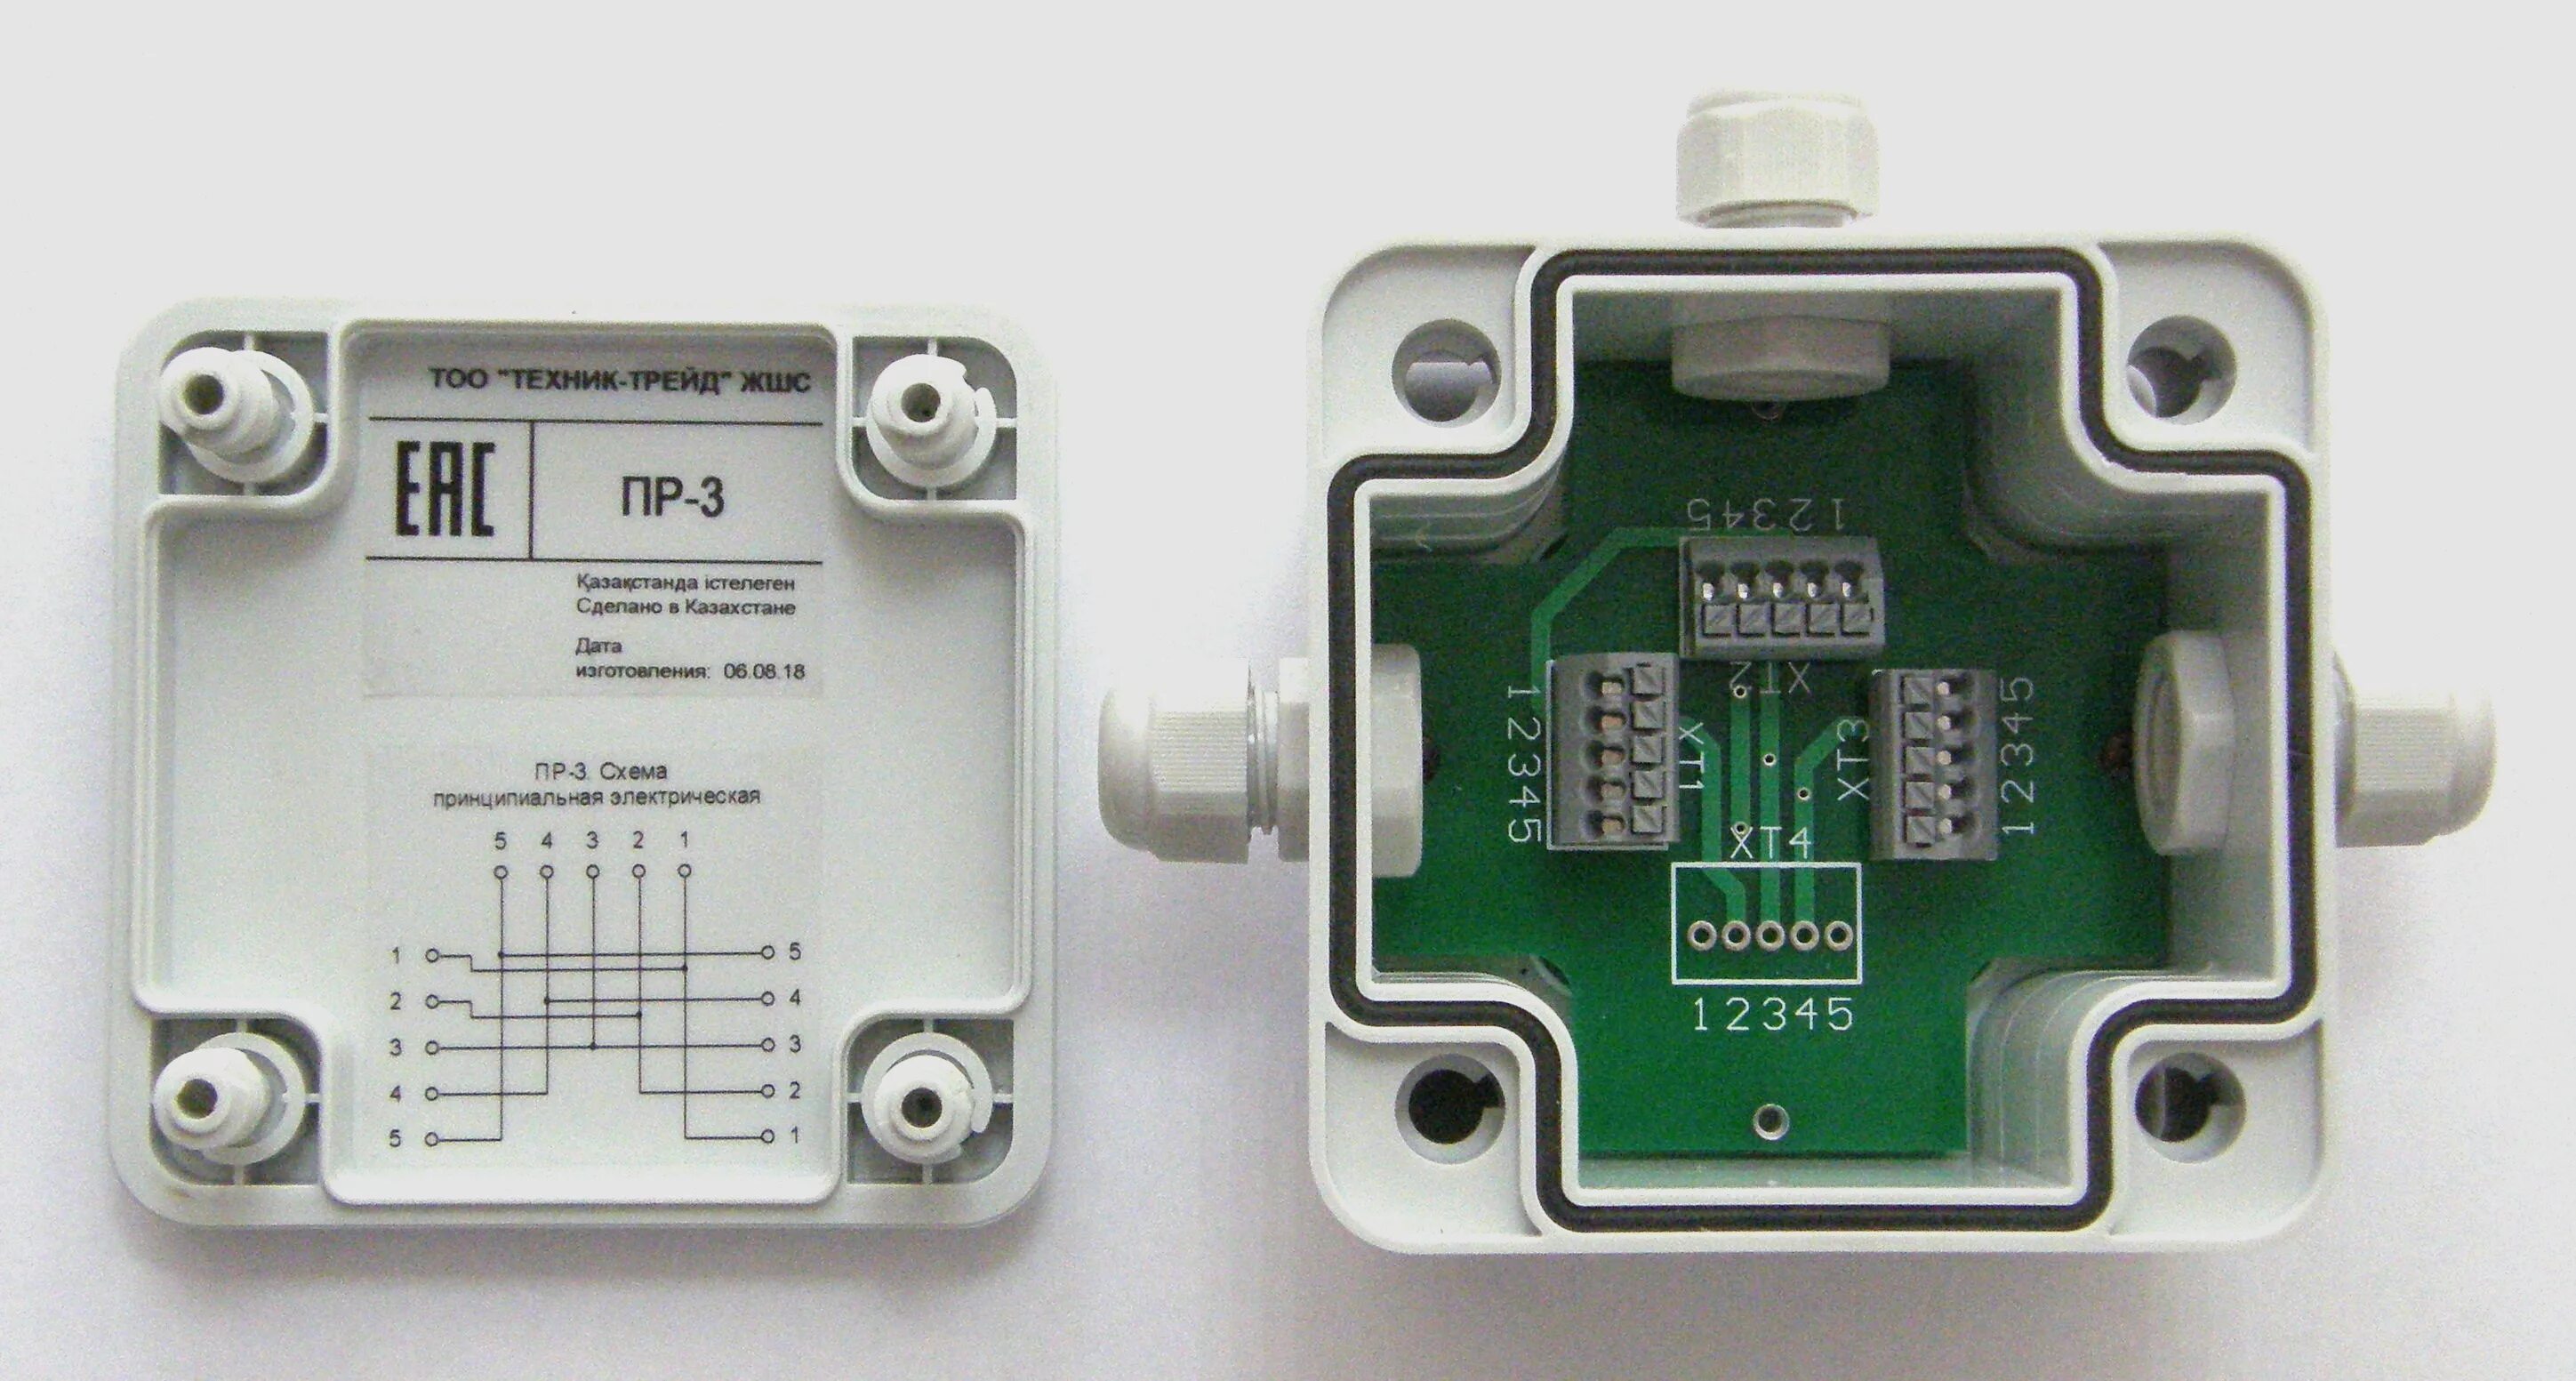 Круг пр 3. Разветвитель интерфейса пр-4 RS-422/485. Разветвитель интерфейса RS-422/485 пр-3. Разветвитель интерфейса RS-485 КРП-3. Разветвитель интерфейса RS-485 пр-4.